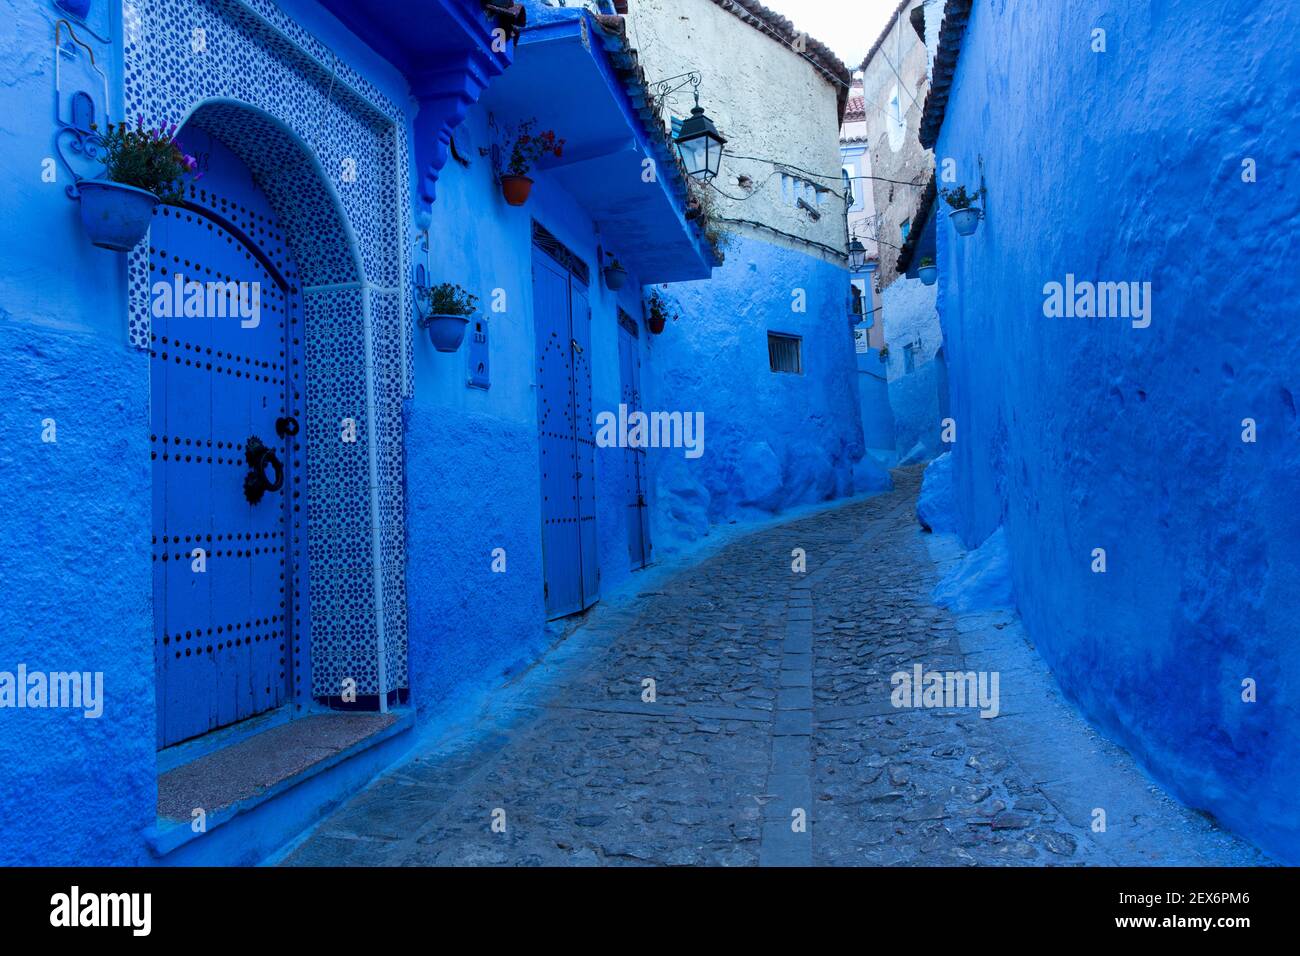 Marokko, Chefchaouen, 'die blaue Stadt' Architektur Indigo Kalk gewaschen Gebäude Stockfoto